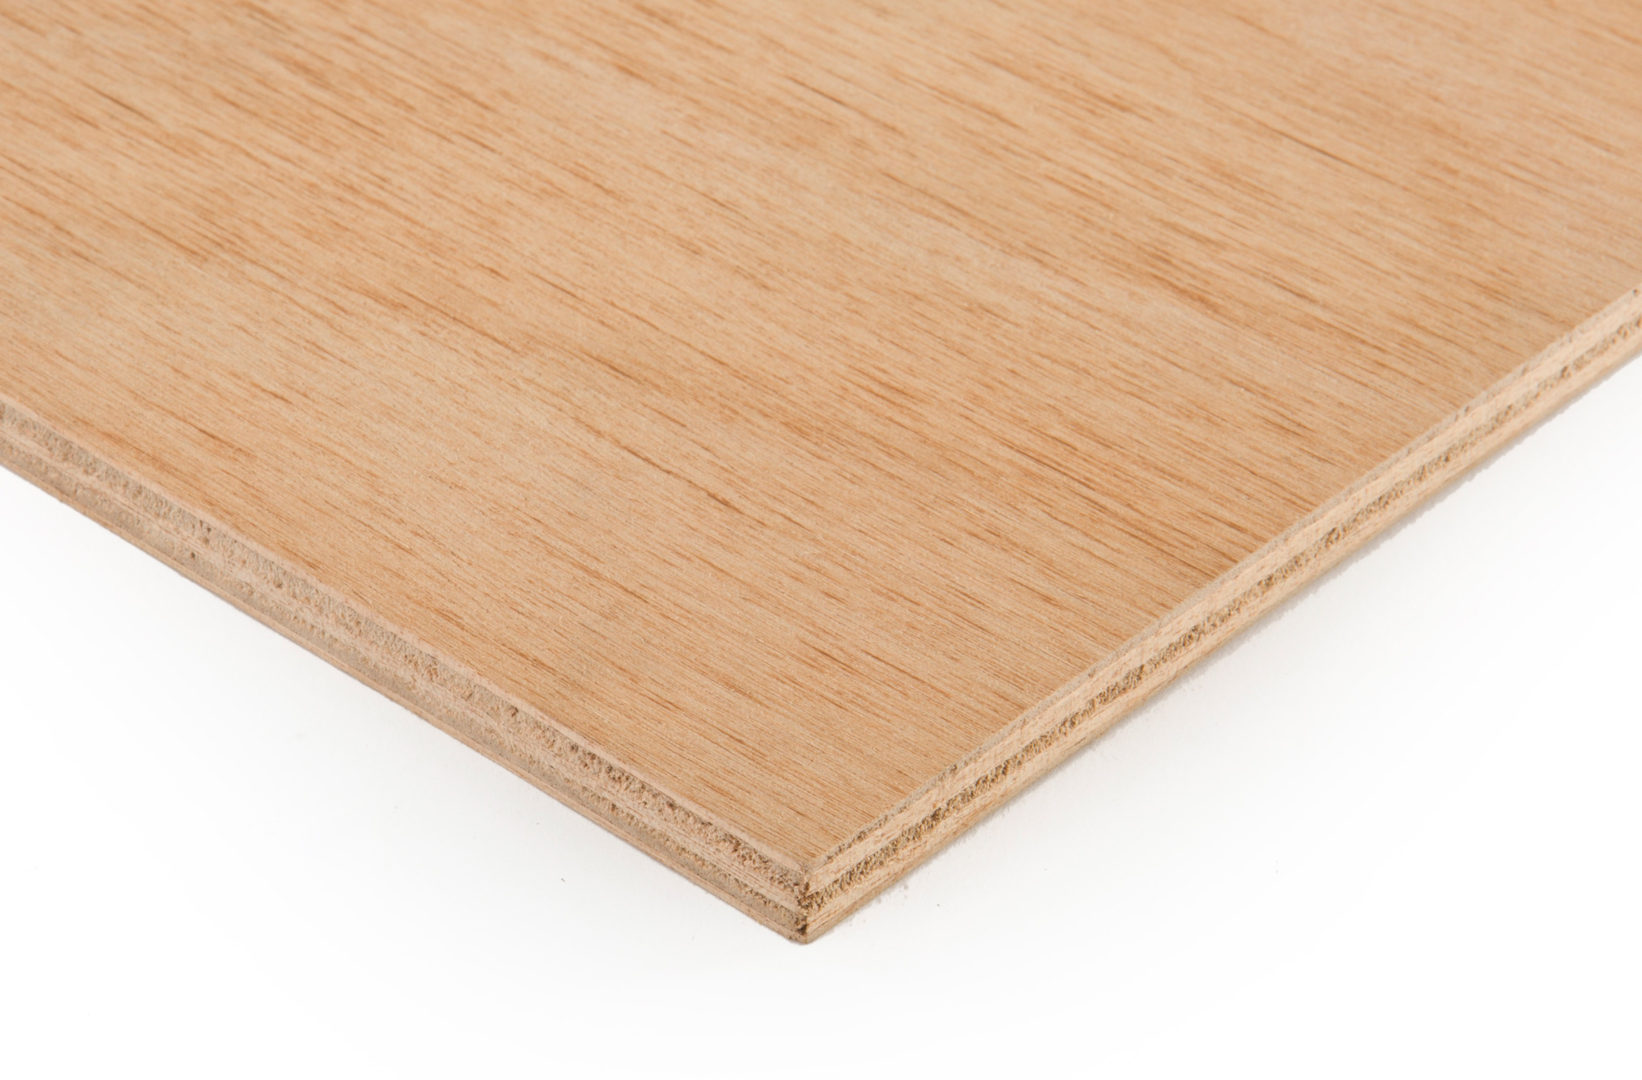 Chapa de madera de okume 317 mm x 120 mm x 5 mm